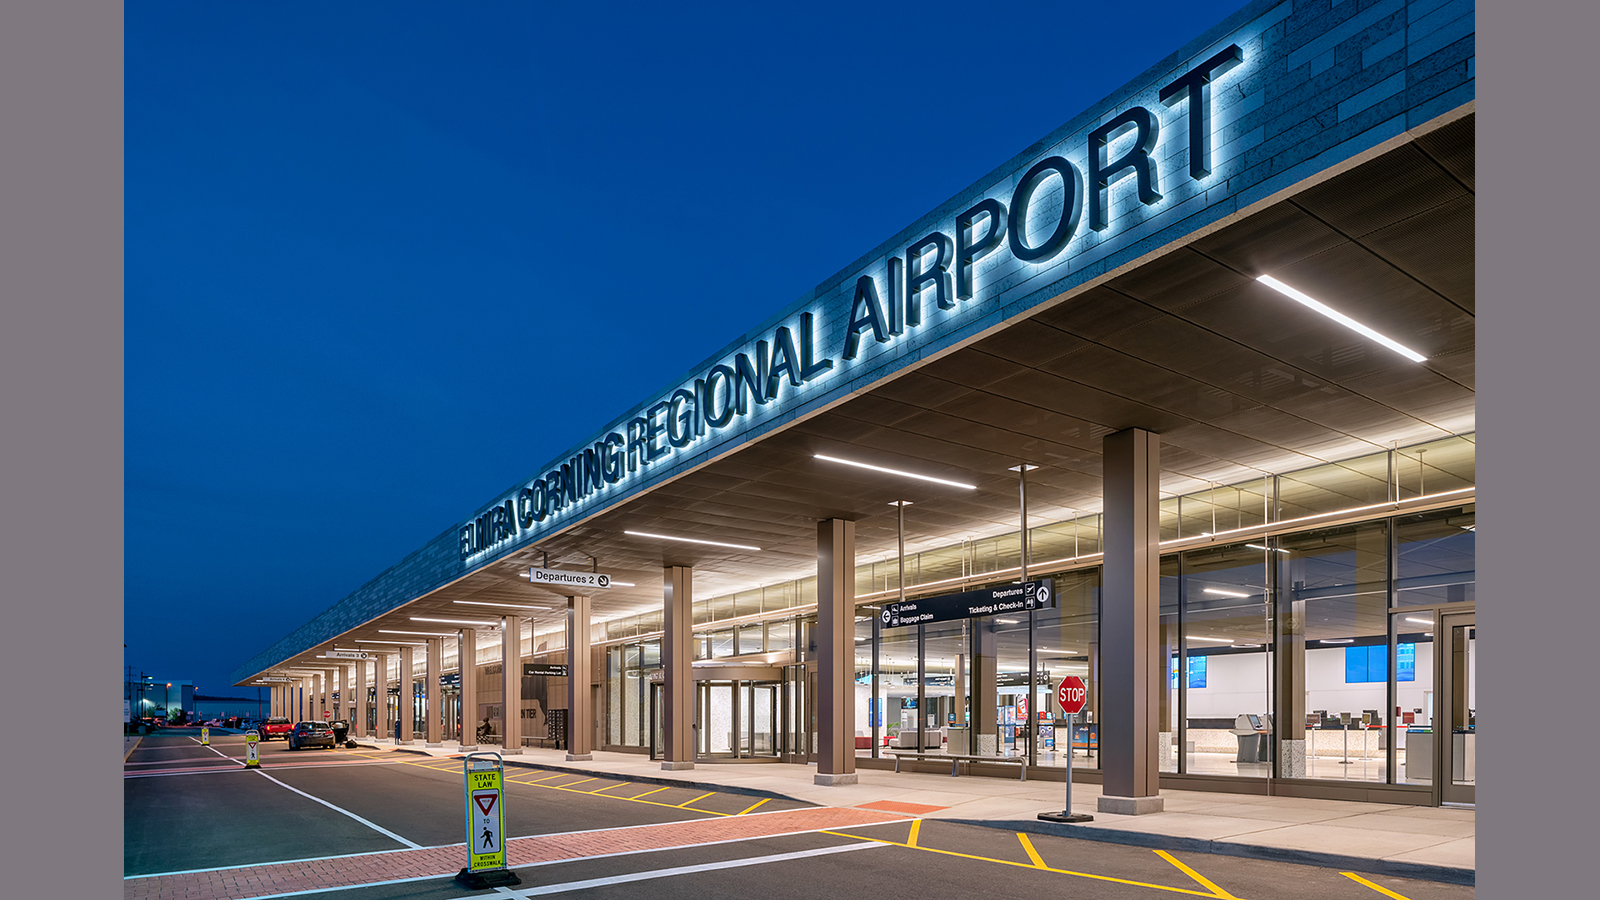 Elmira Corning Airport Fm Exterior, departures lane